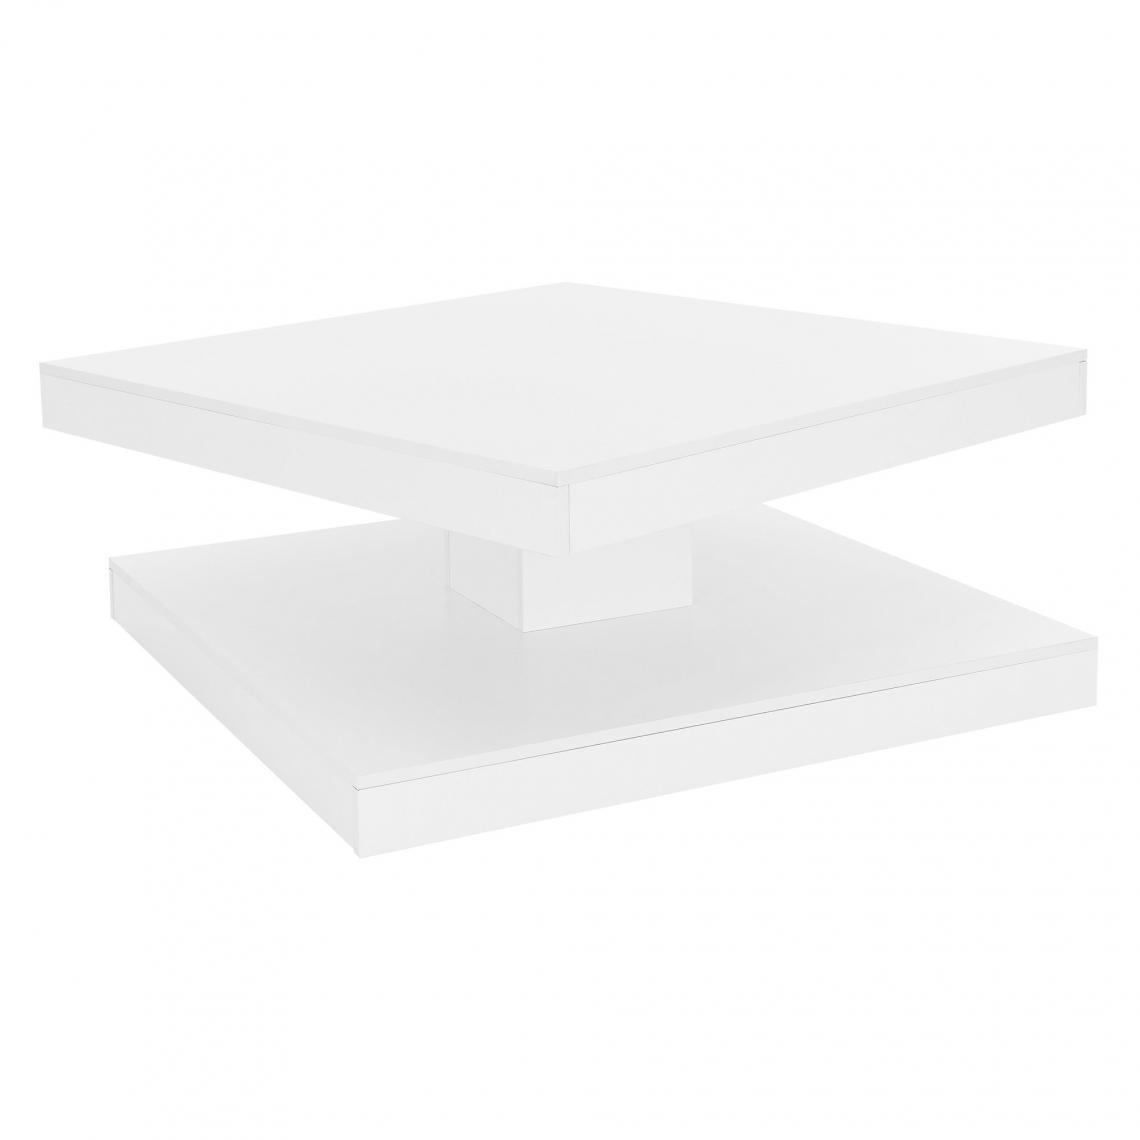 ML design modern living - Table basse avec plateau tournant blanc table d'appoint pivotante 360° 78x78 cm - Tables basses